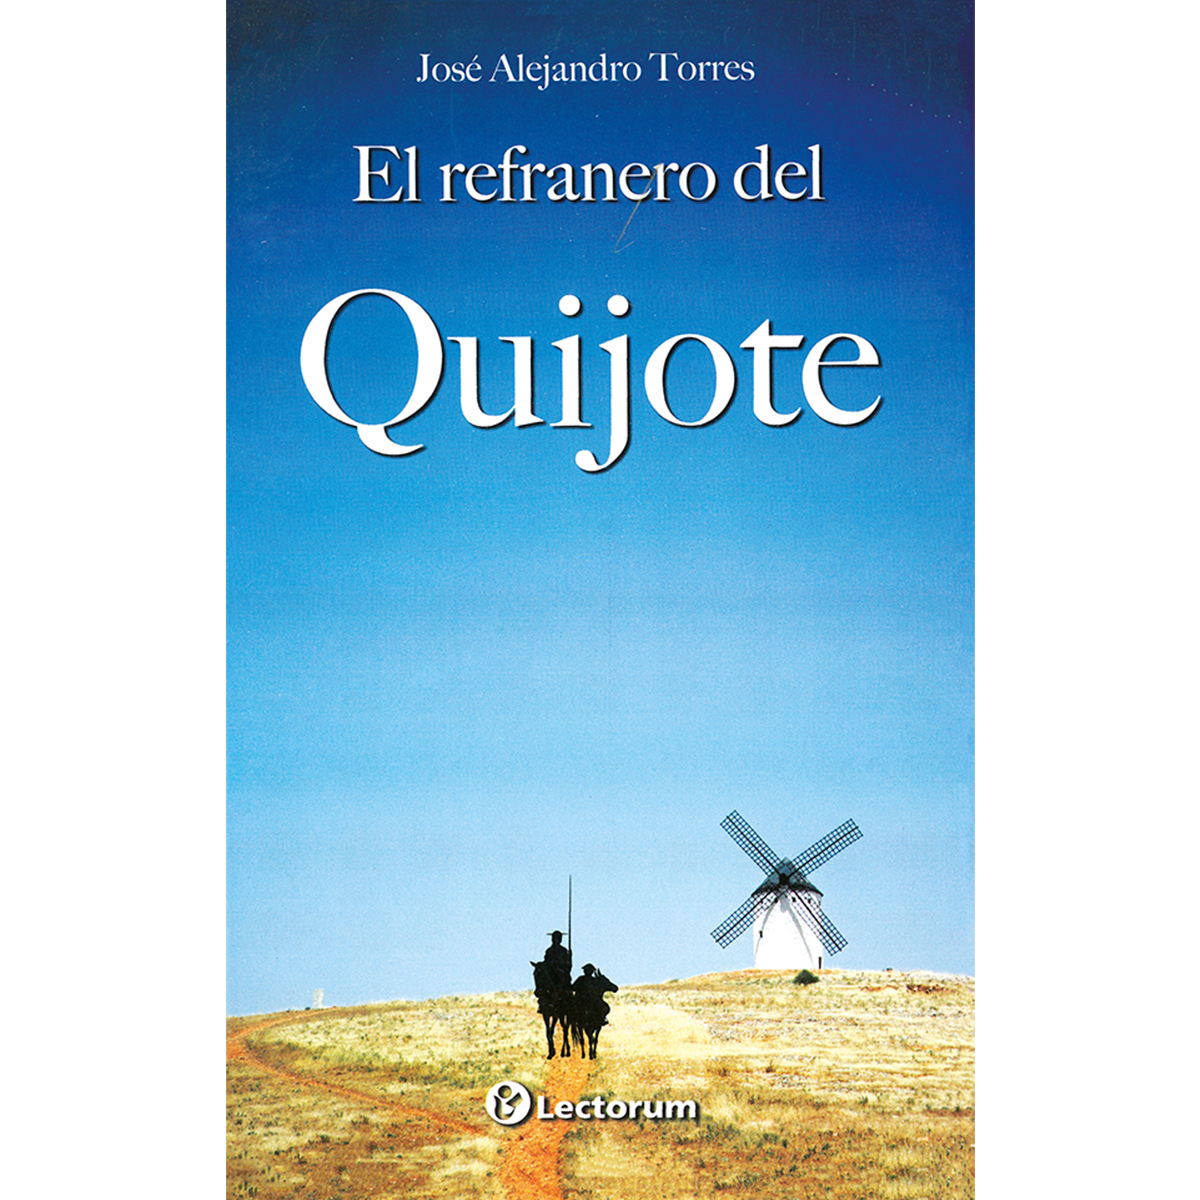 El refranero del Quijote